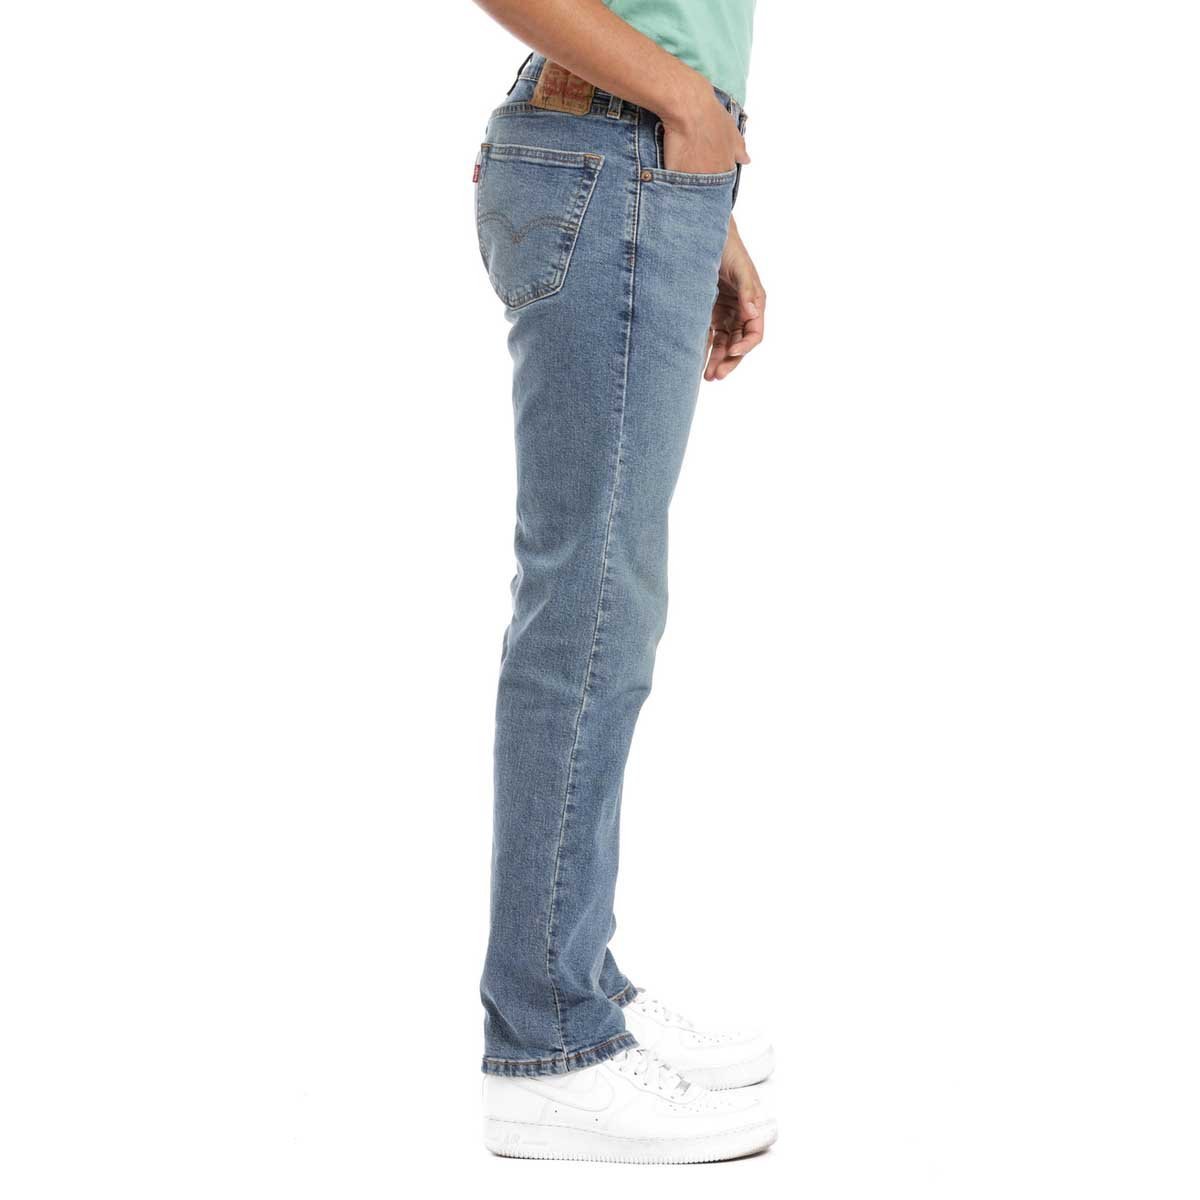 Jeans Levis 505 Regular Fit para Hombre